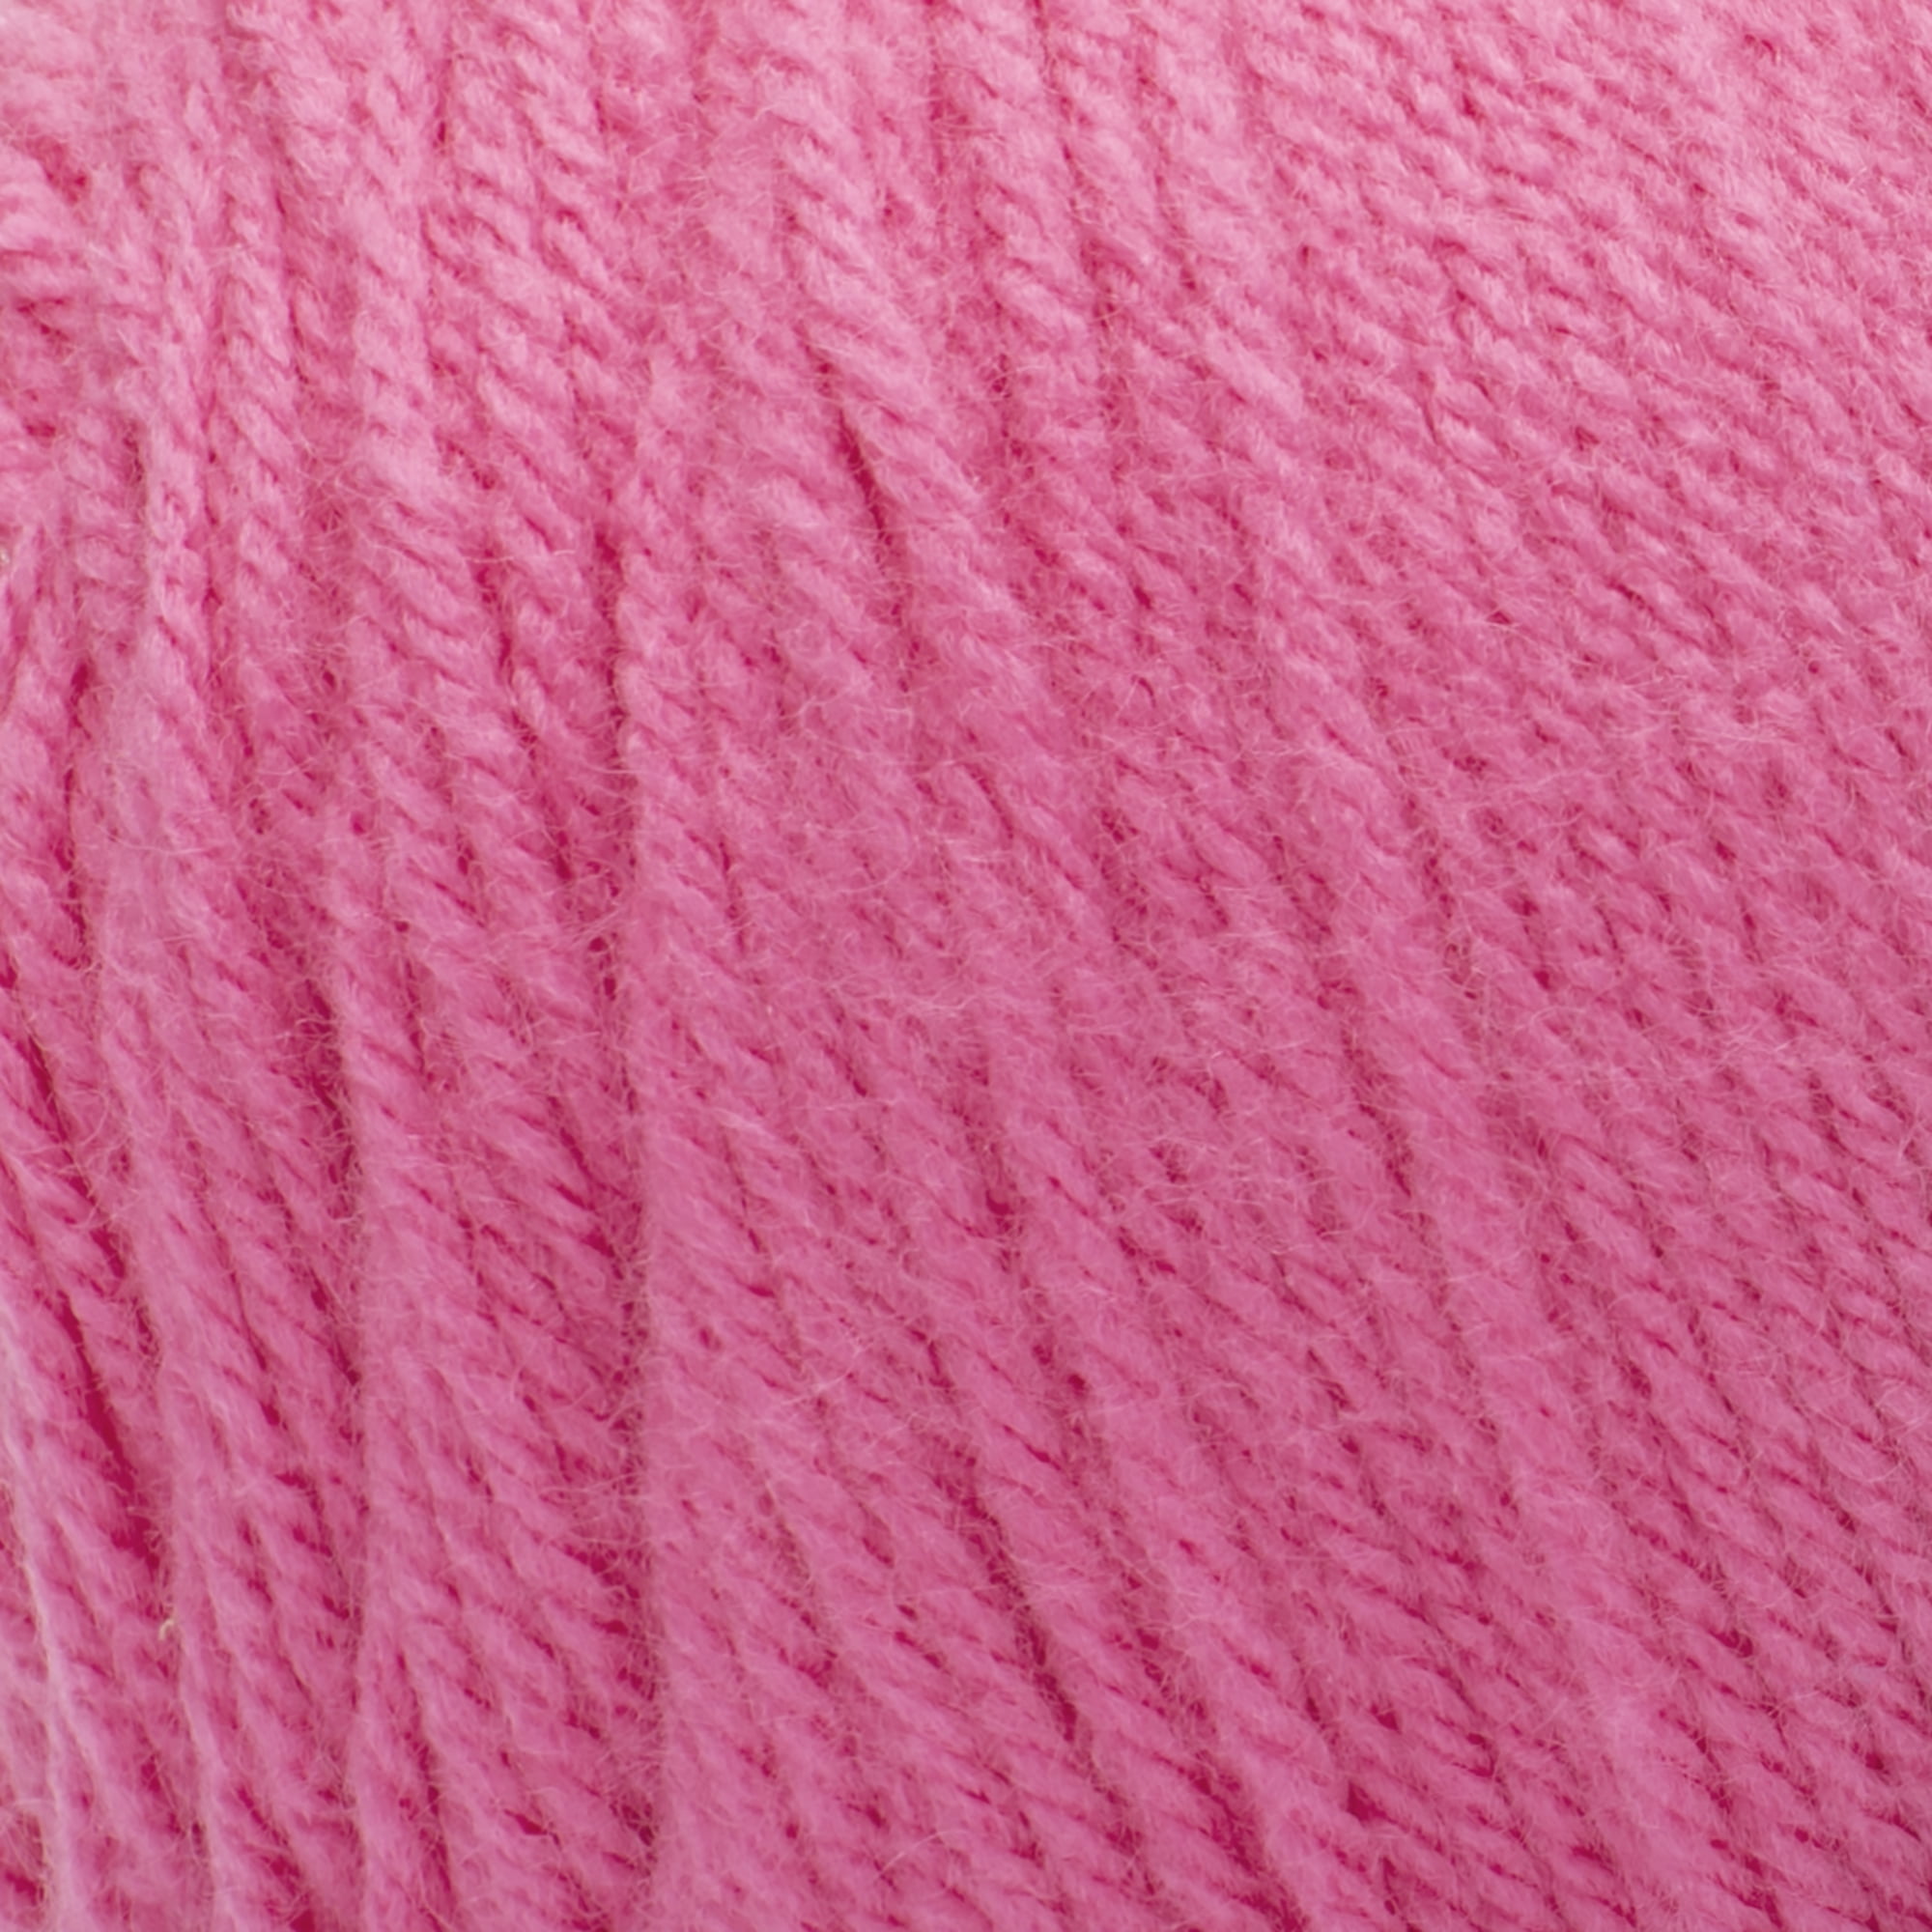 Mainstays Medium Acrylic Pink Yarn, 397 yd